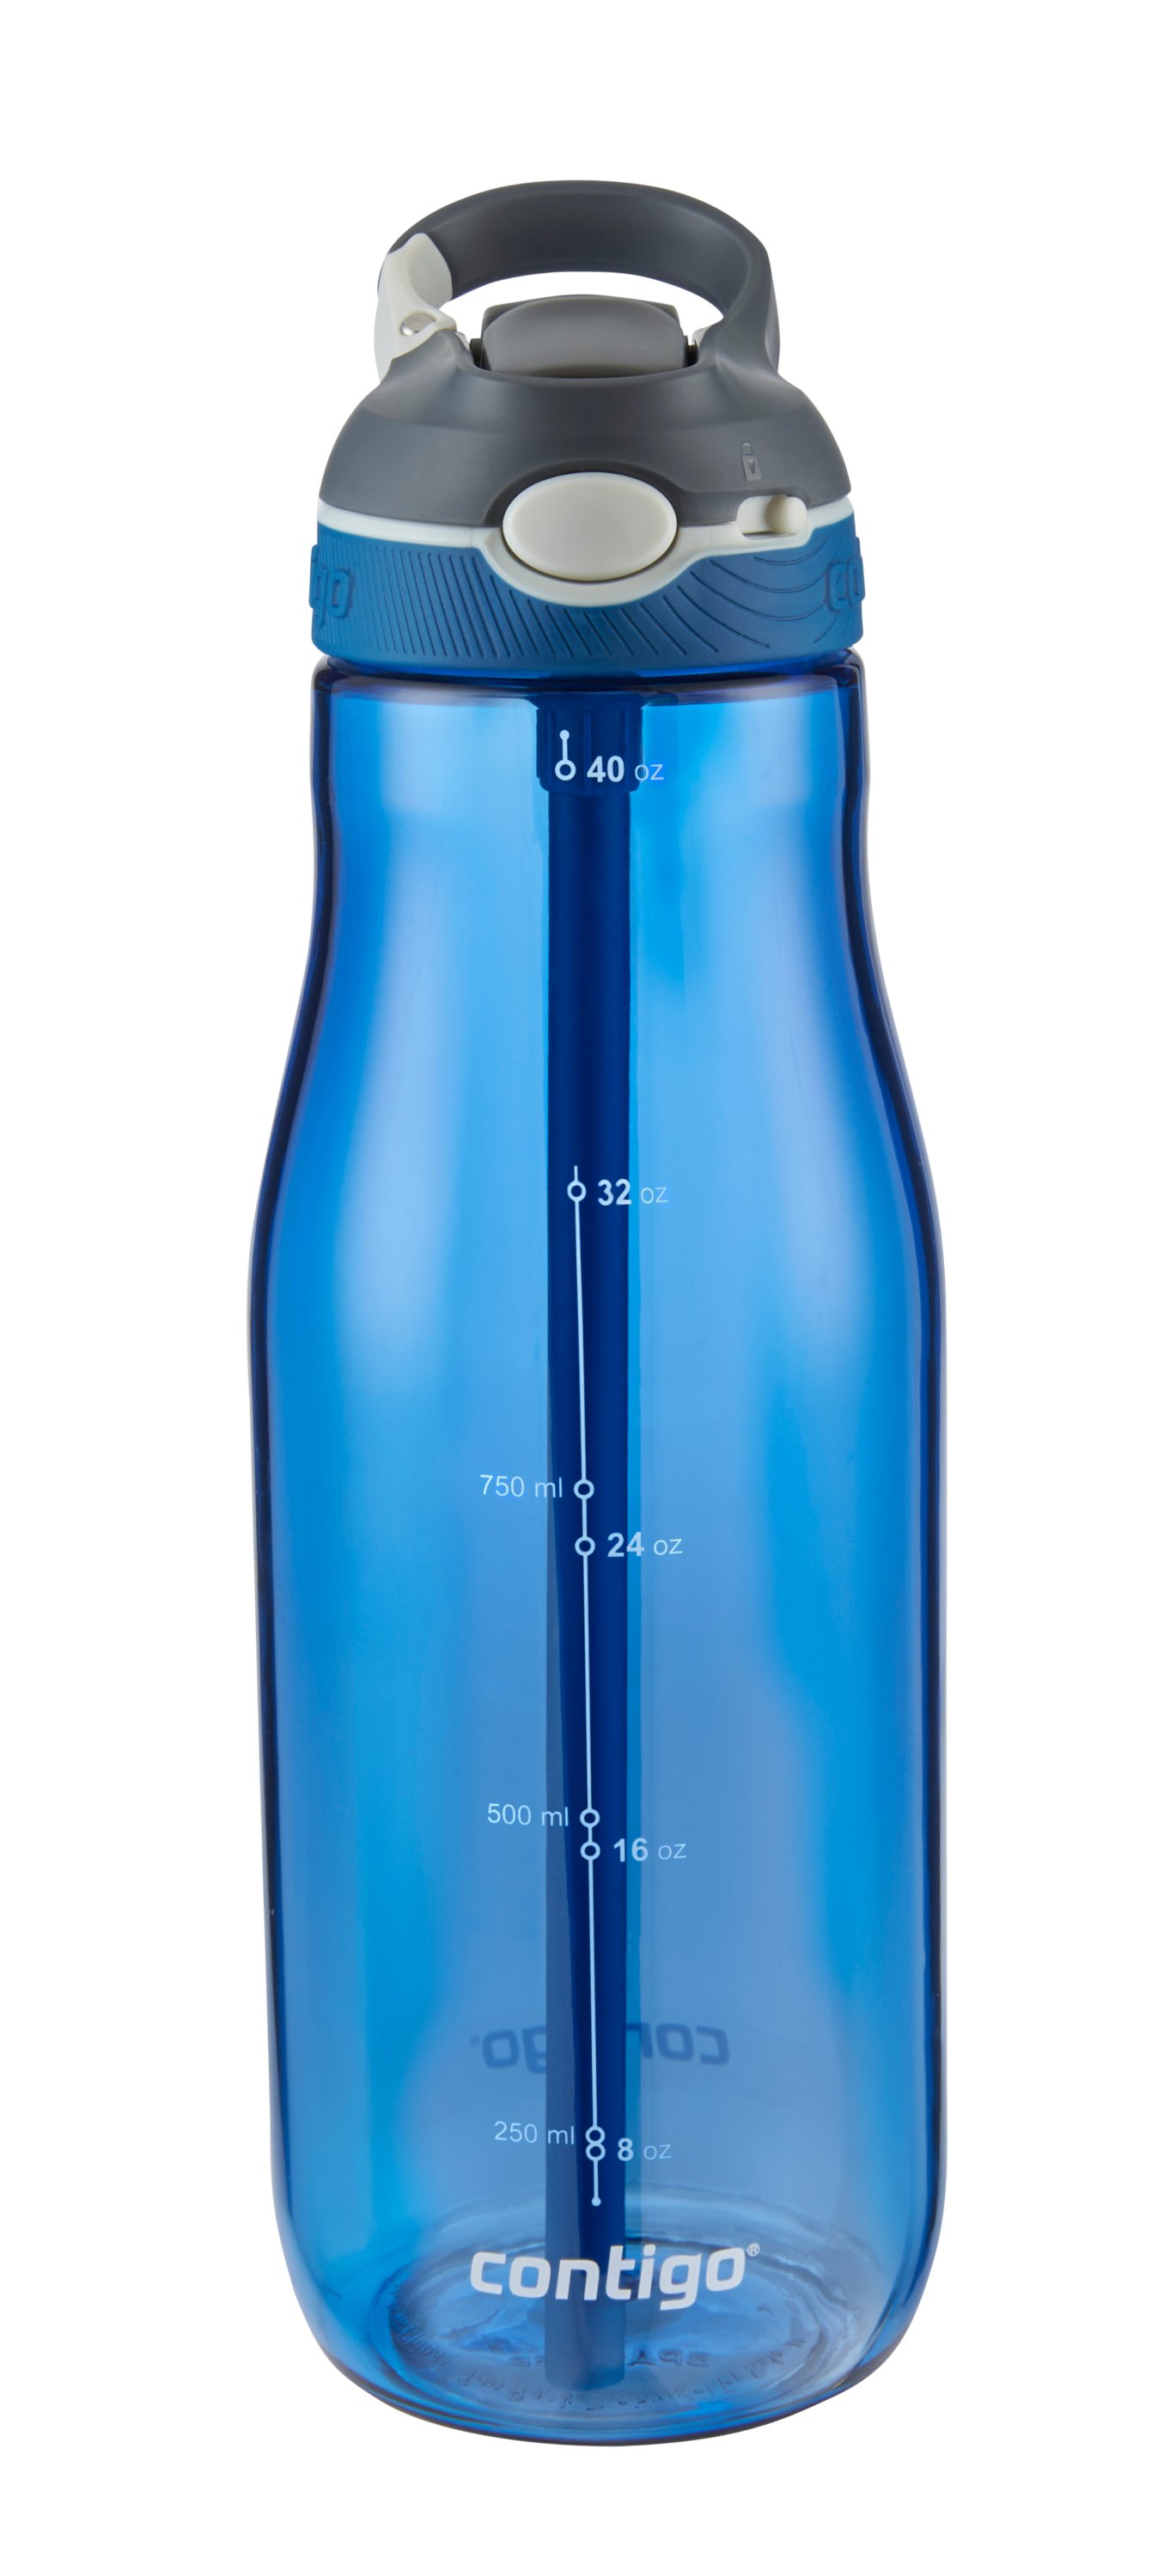 Thermal water bottle Contigo Ashland Chill 590ml Matte Black